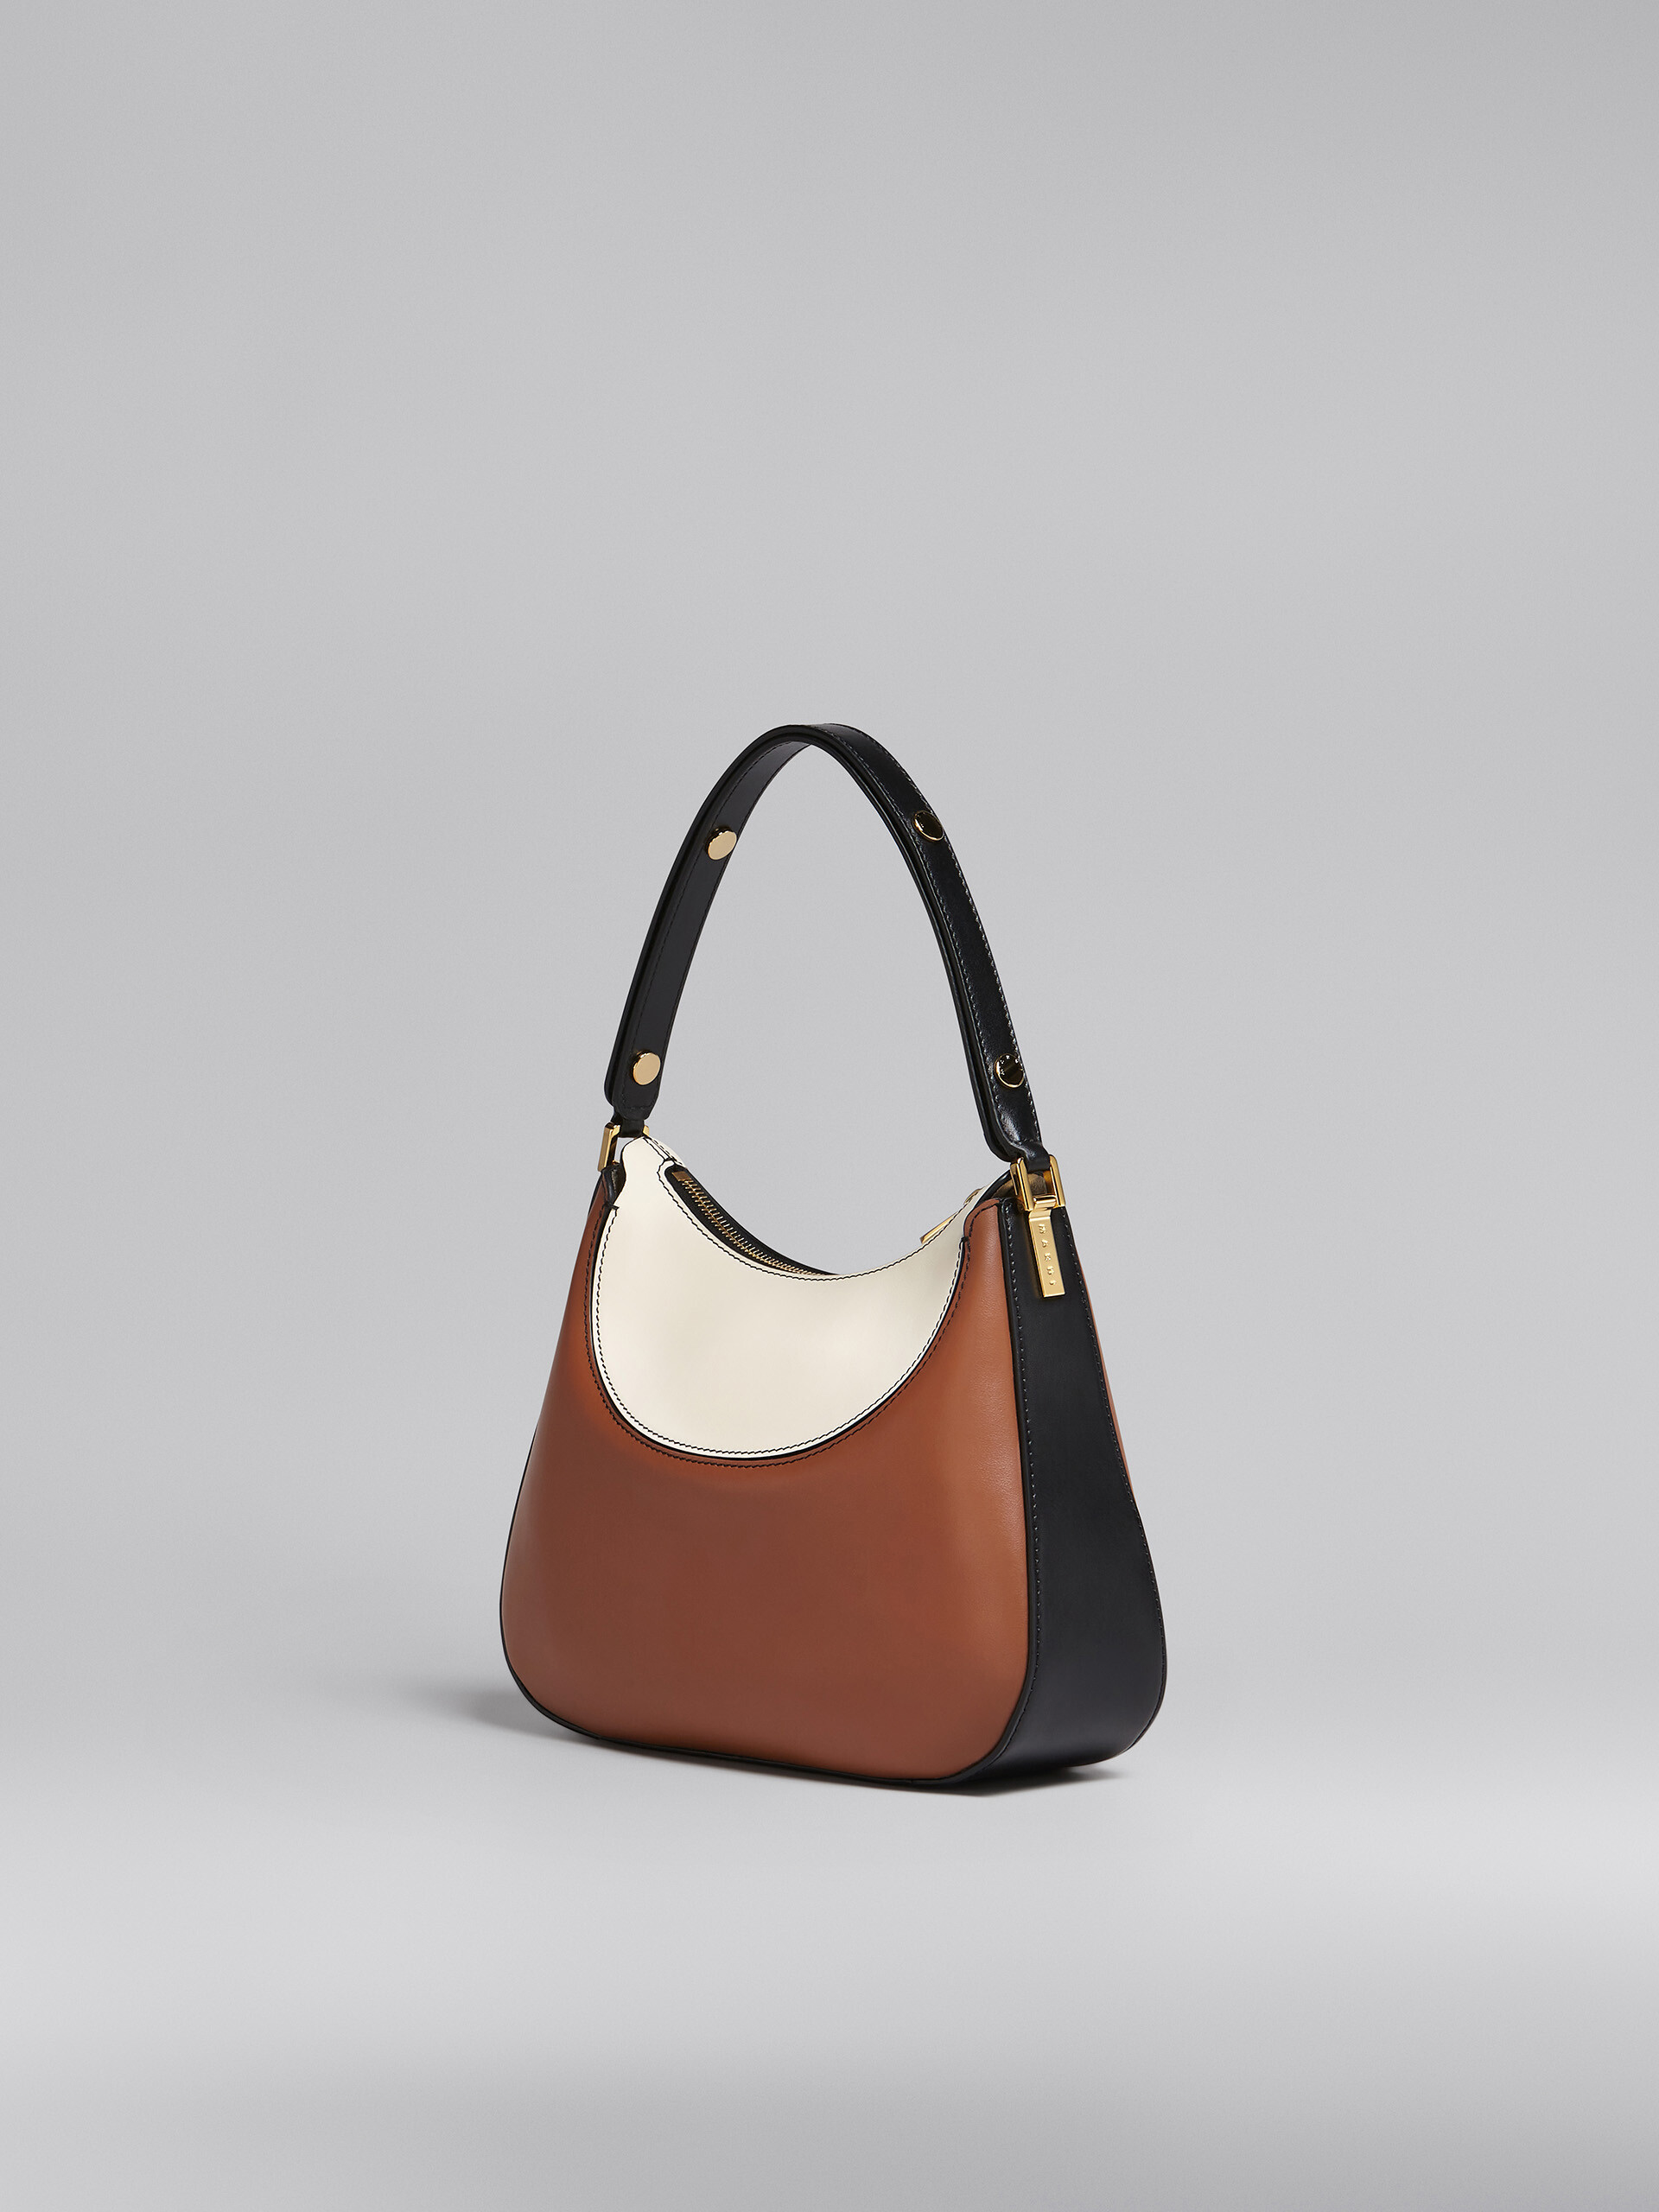 Petit sac Milano en cuir marron, noir et blanc - Sacs à main - Image 3